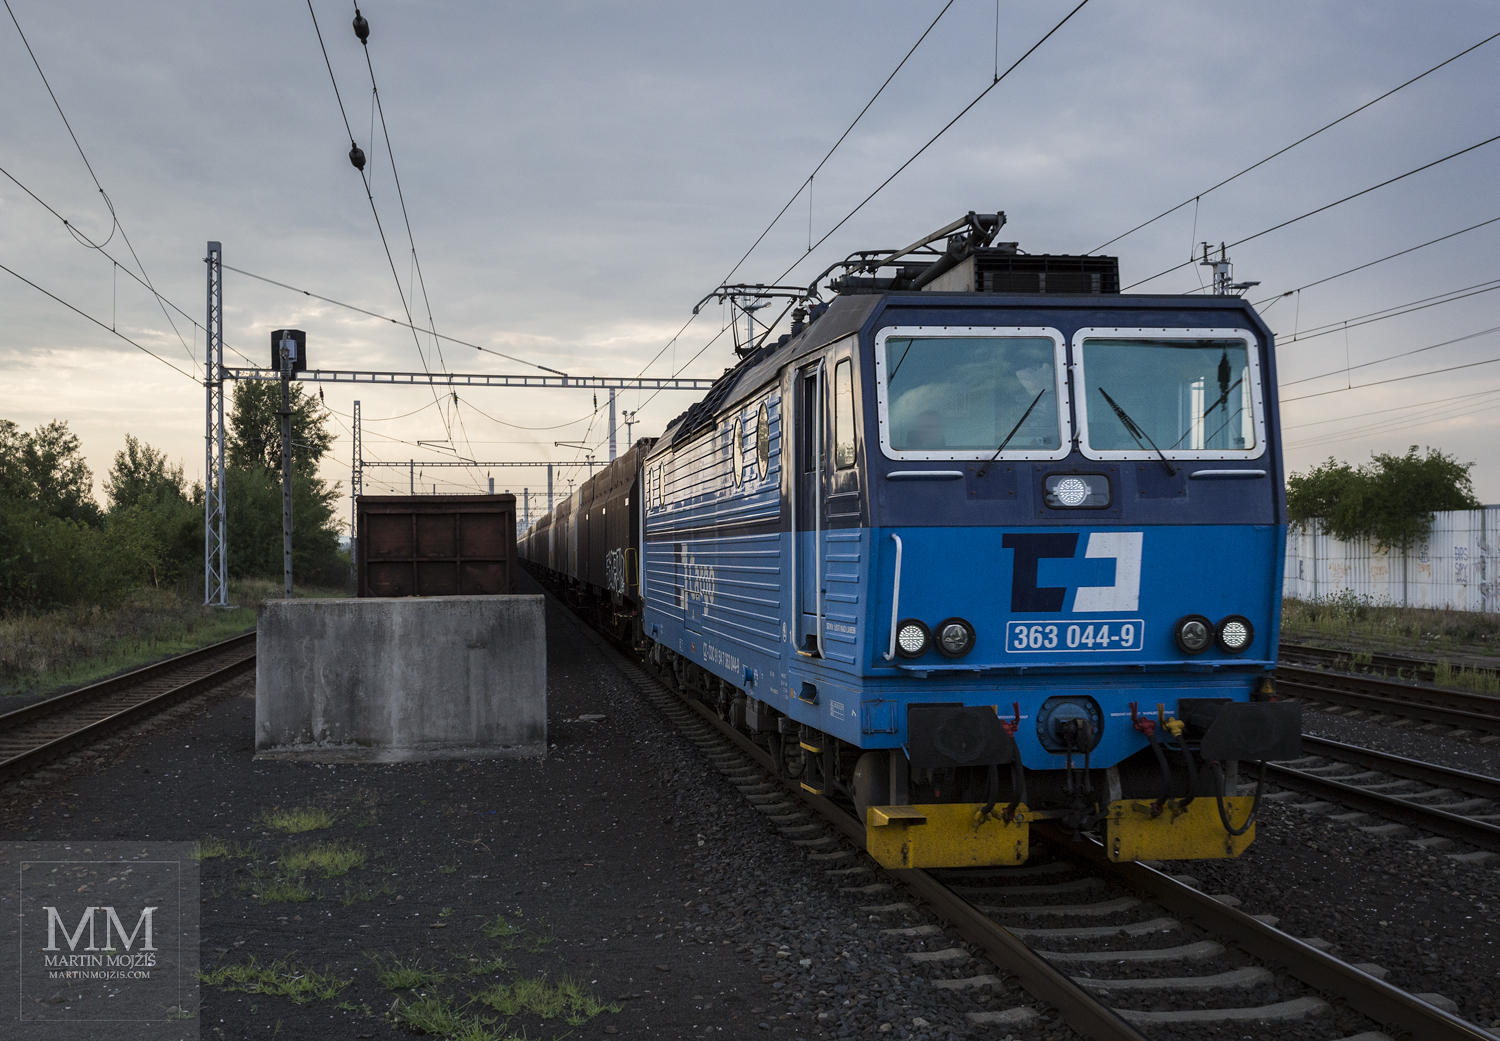 Lokomotiva 363 044-9 České dráhy Cargo.